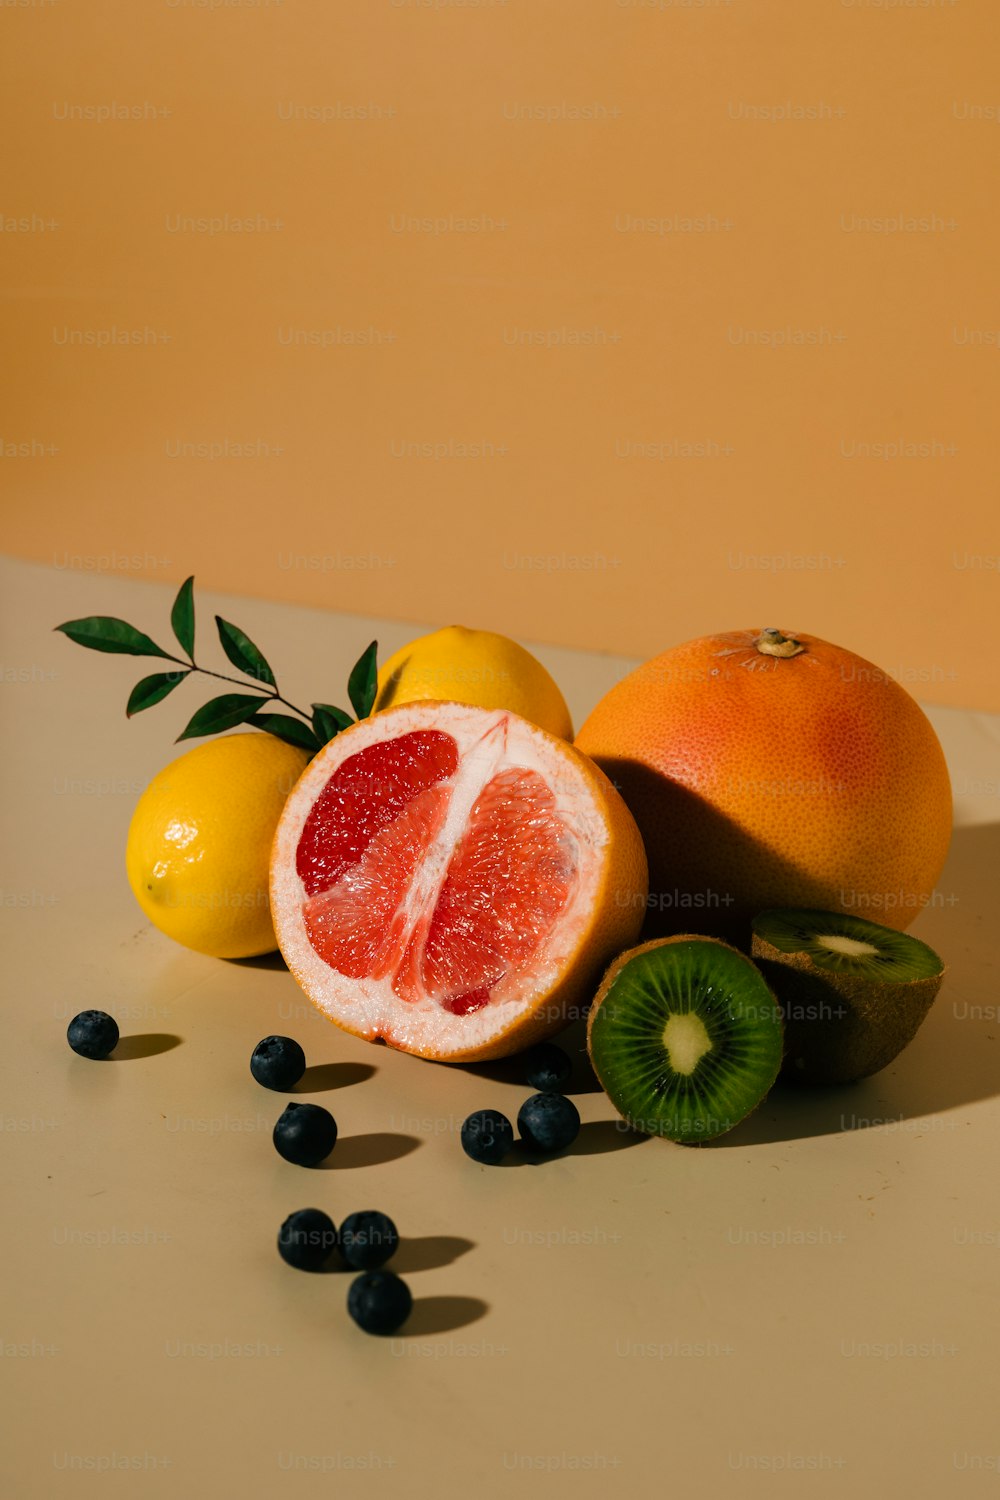 a grapefruit, orange, kiwi, and lemons on a table